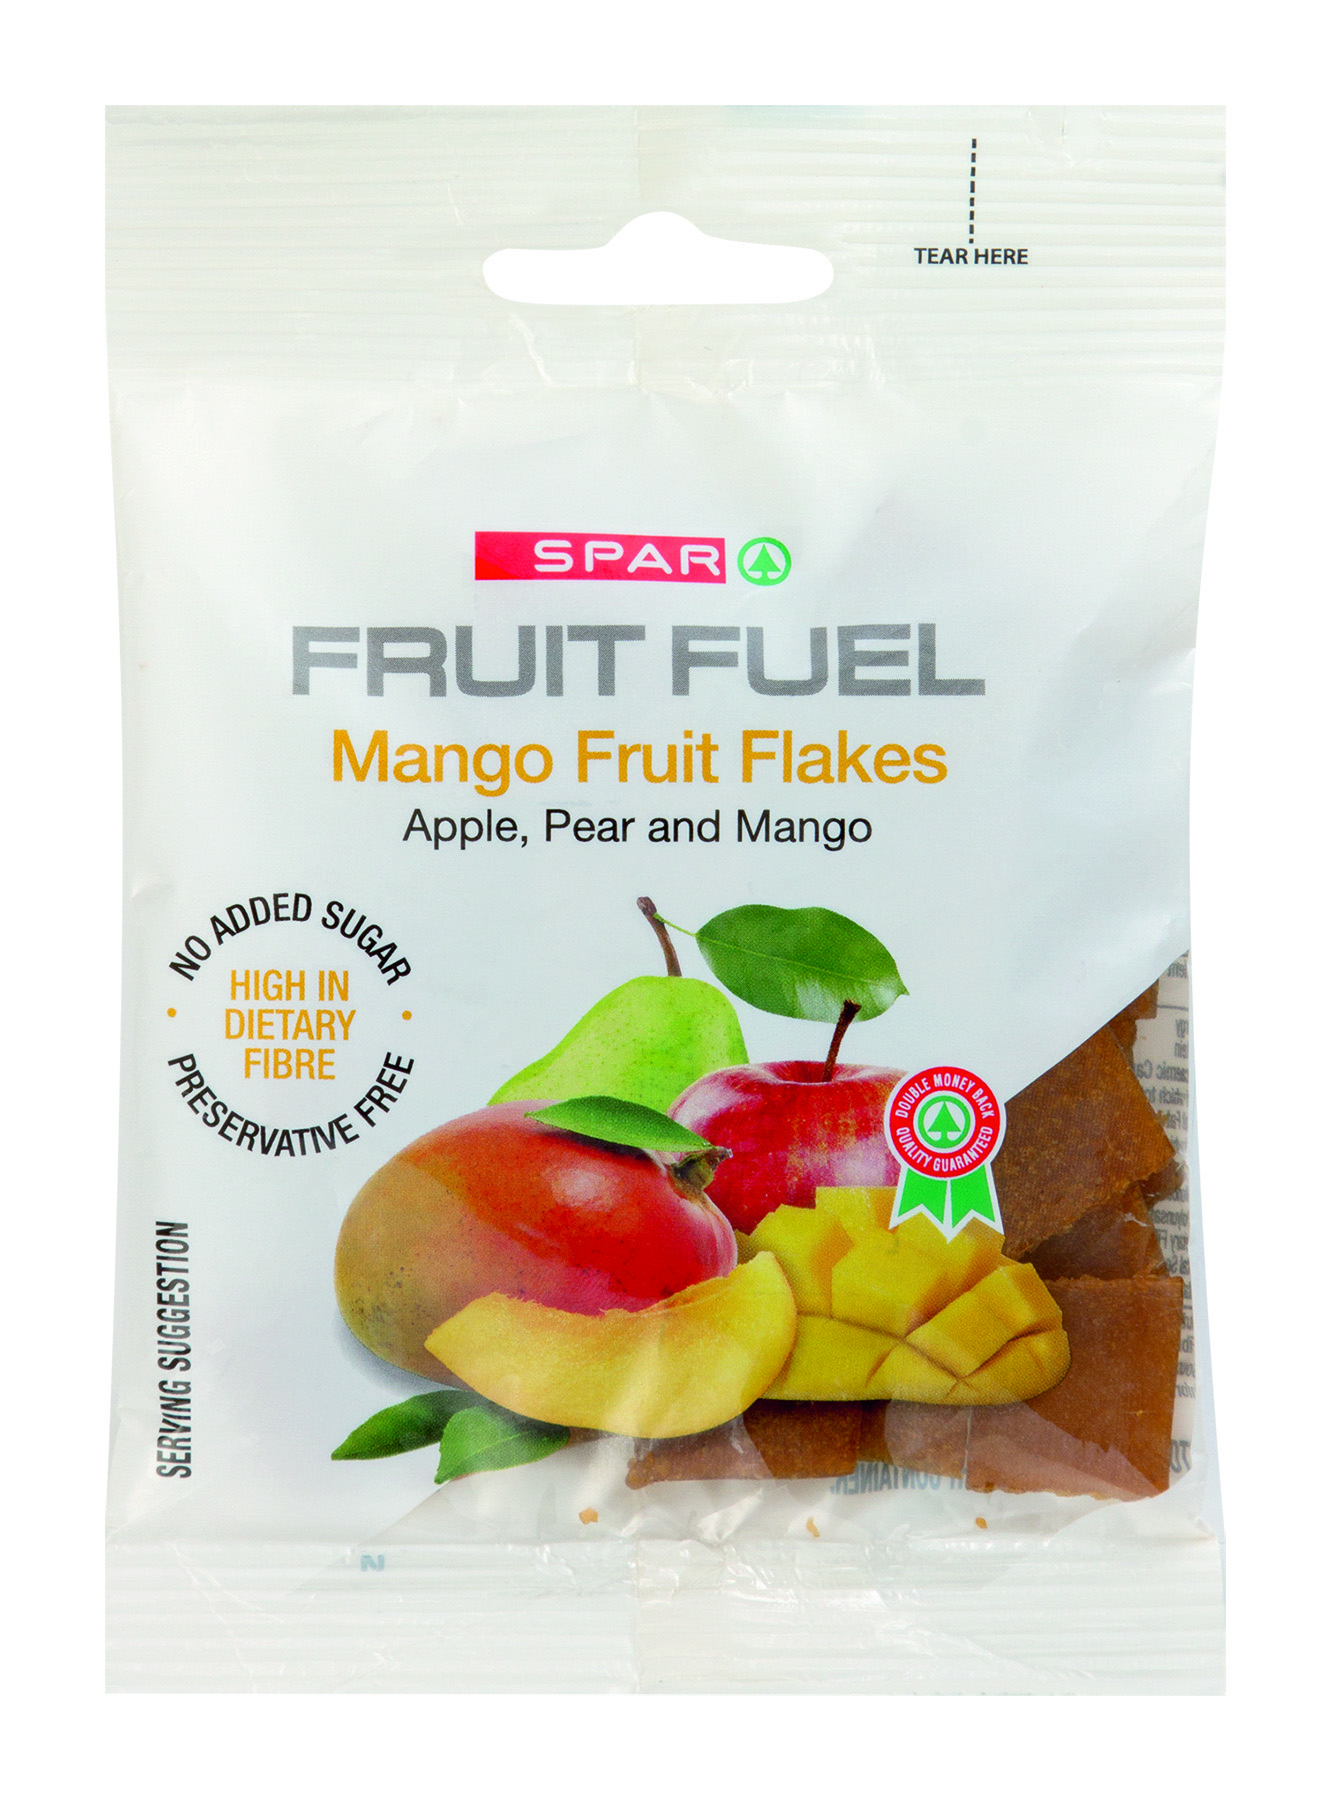 fruit fuel mango fruit flakes